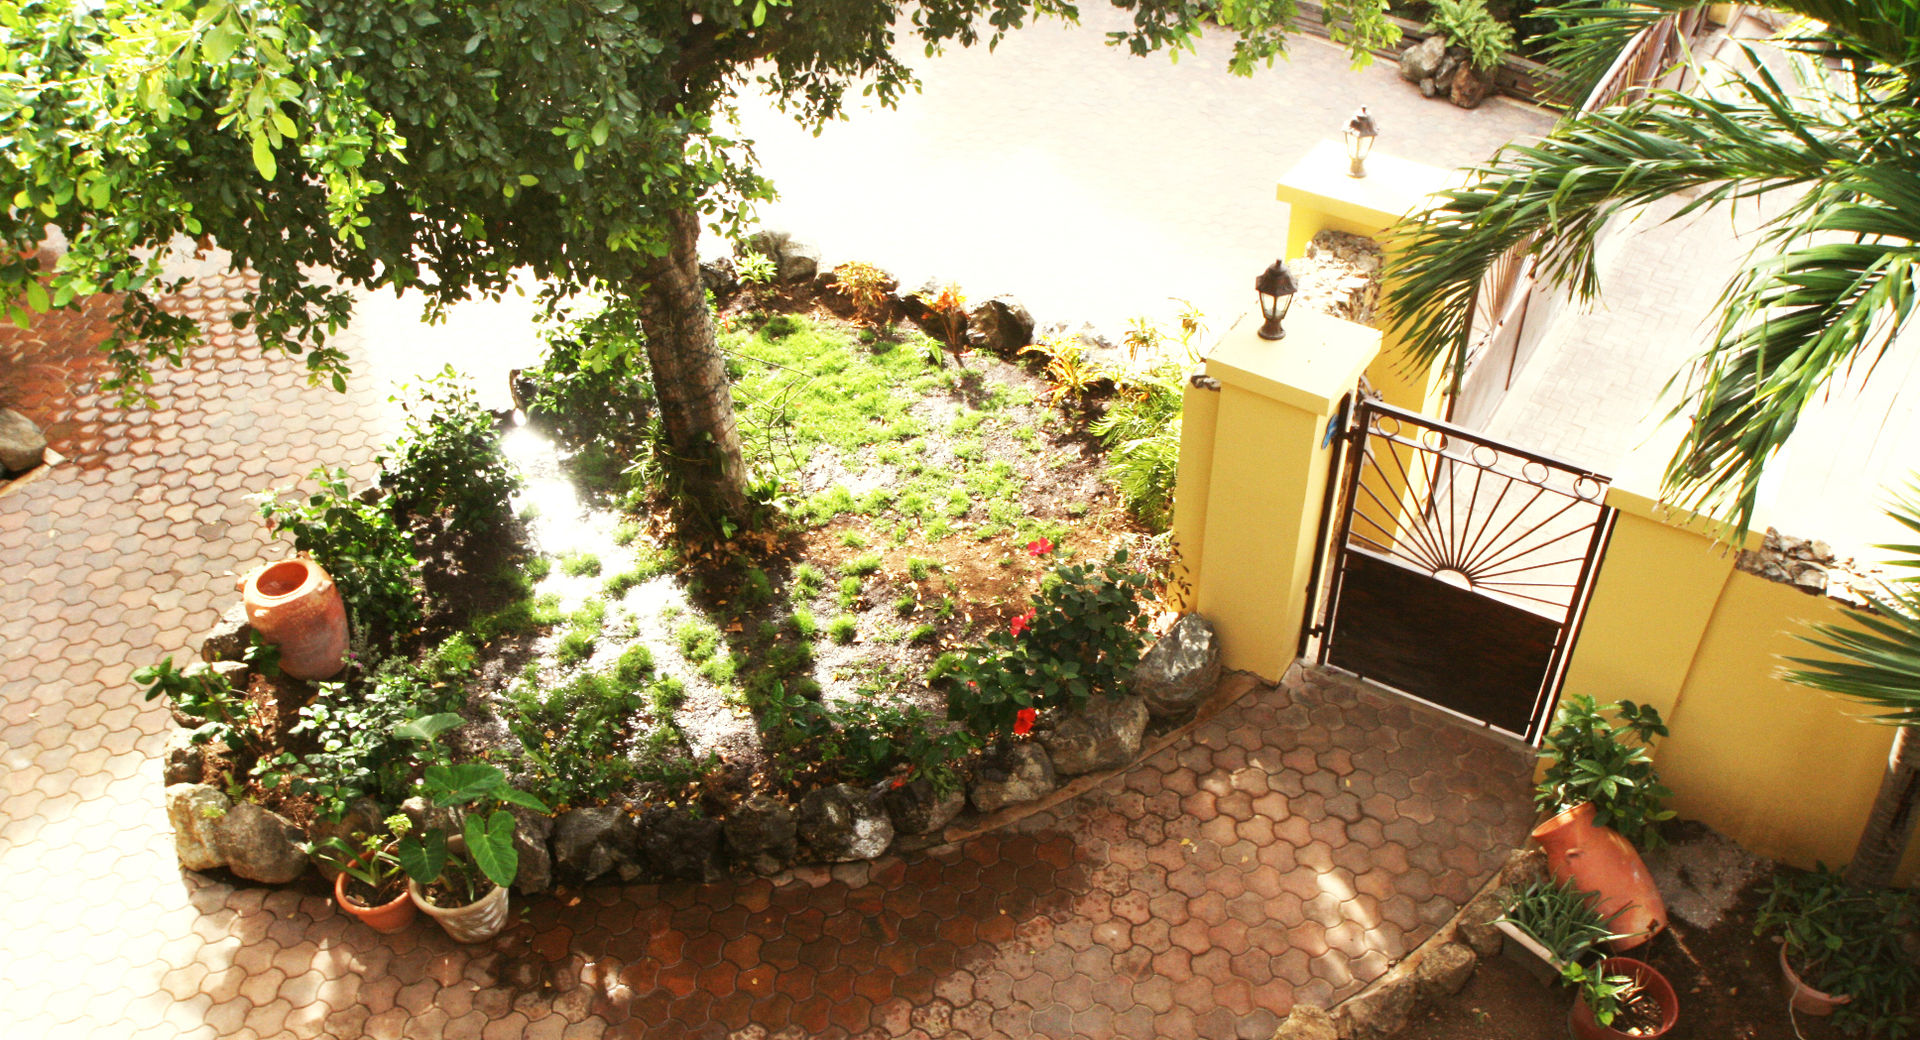 Casa Rokx, Willemstad Curaçao, architectenbureau Aerlant Cloin BNA architectenbureau Aerlant Cloin BNA Egzotyczny ogród